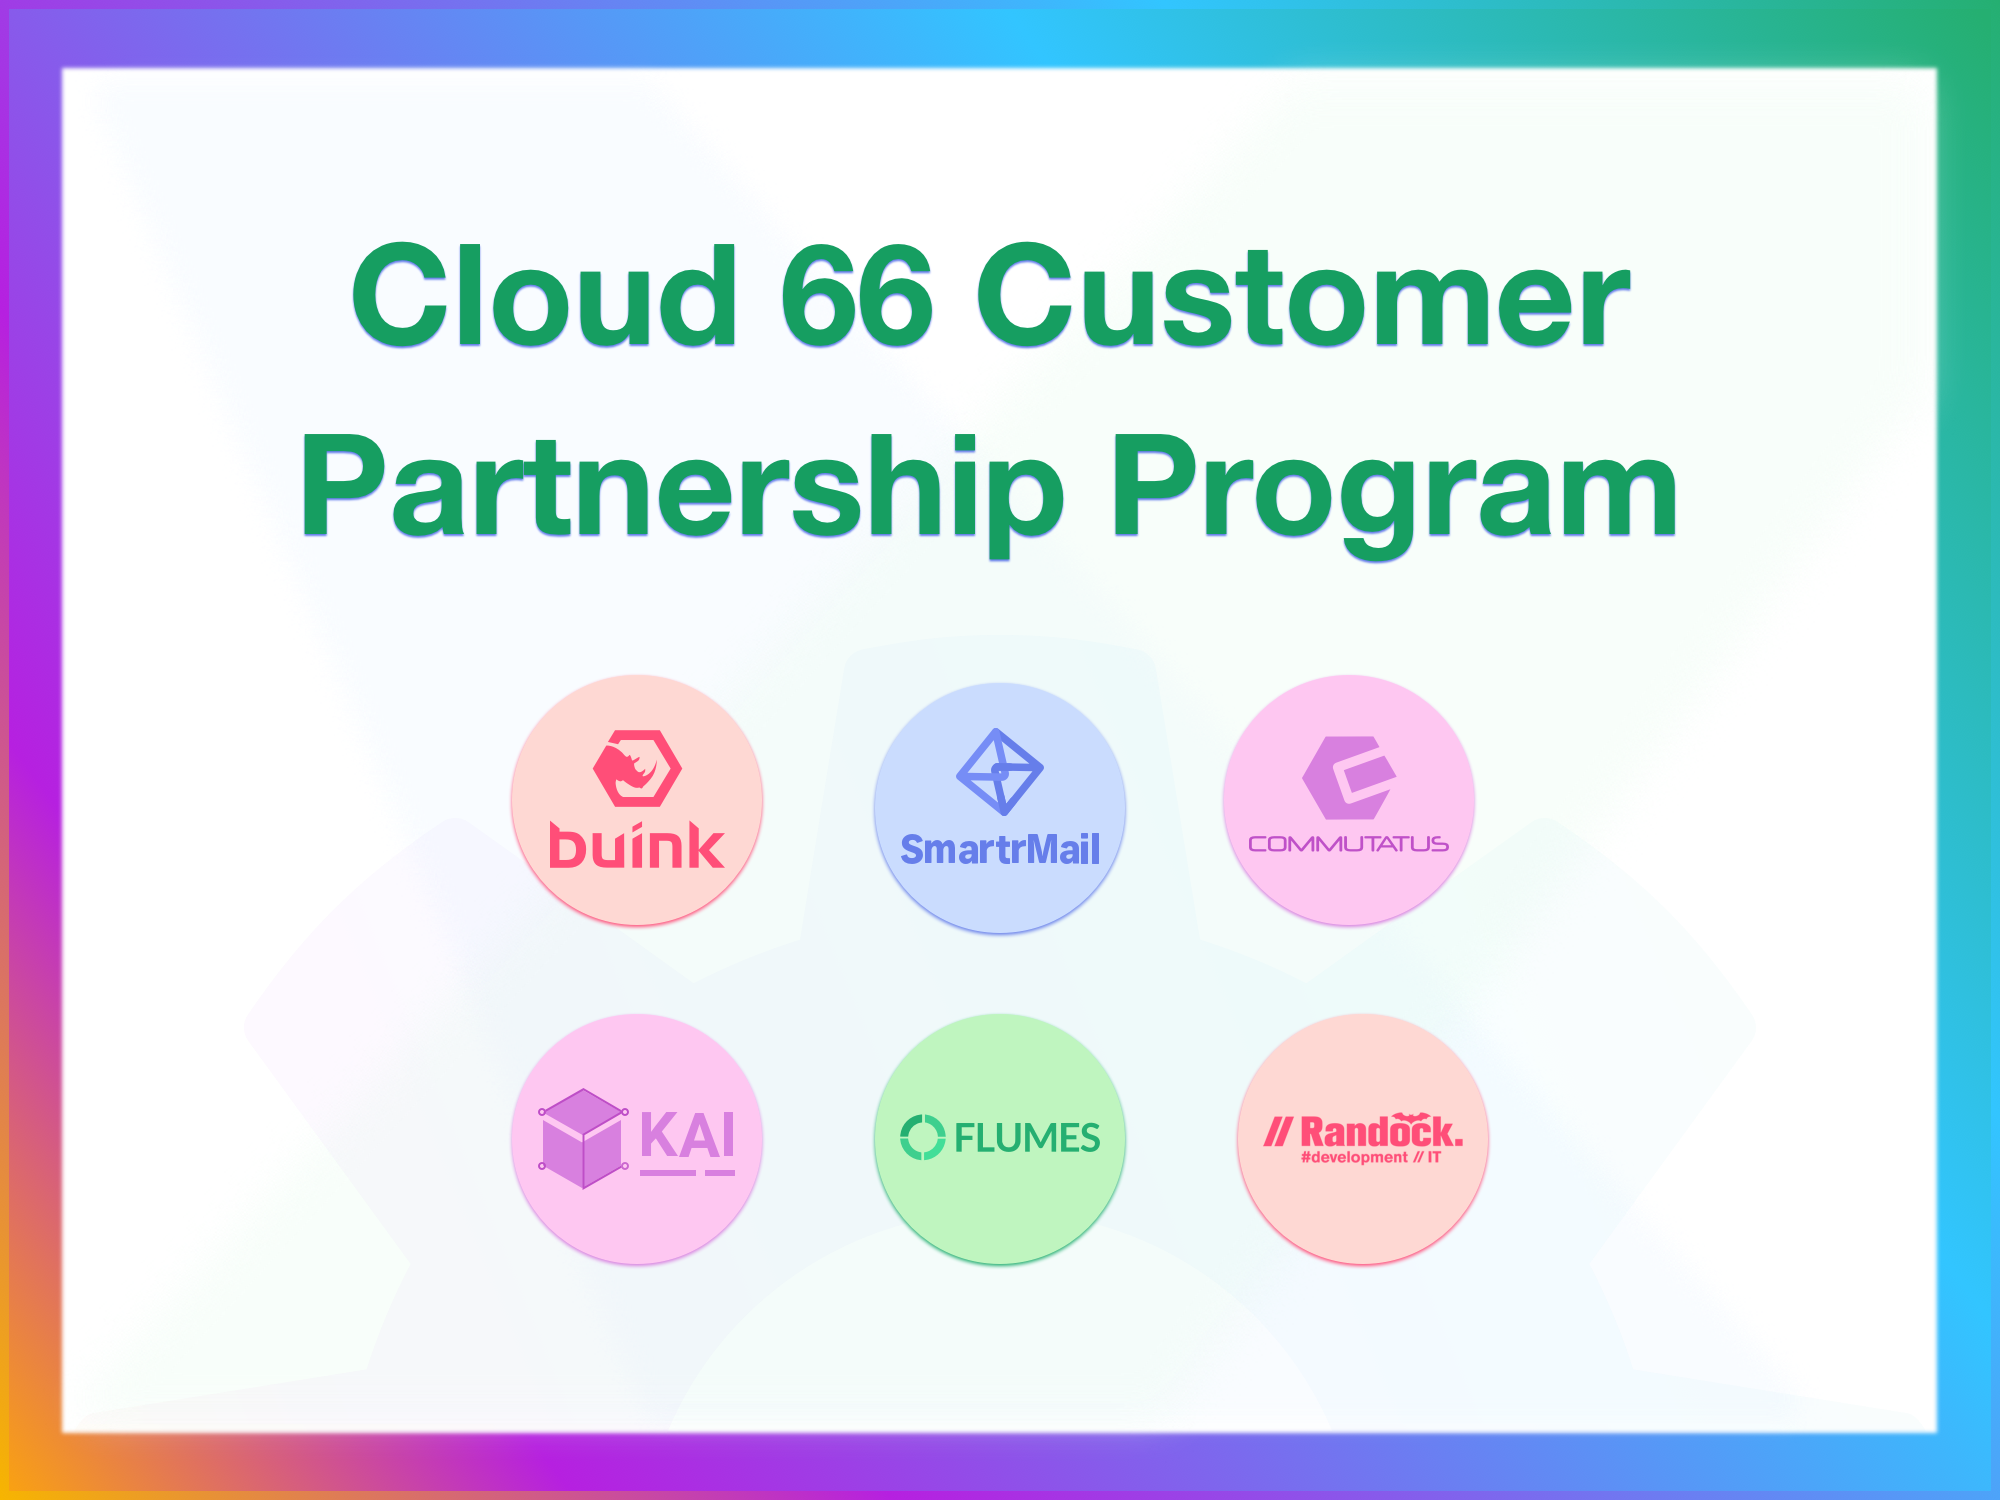 introducing-cloud-66-customer-partnership-program